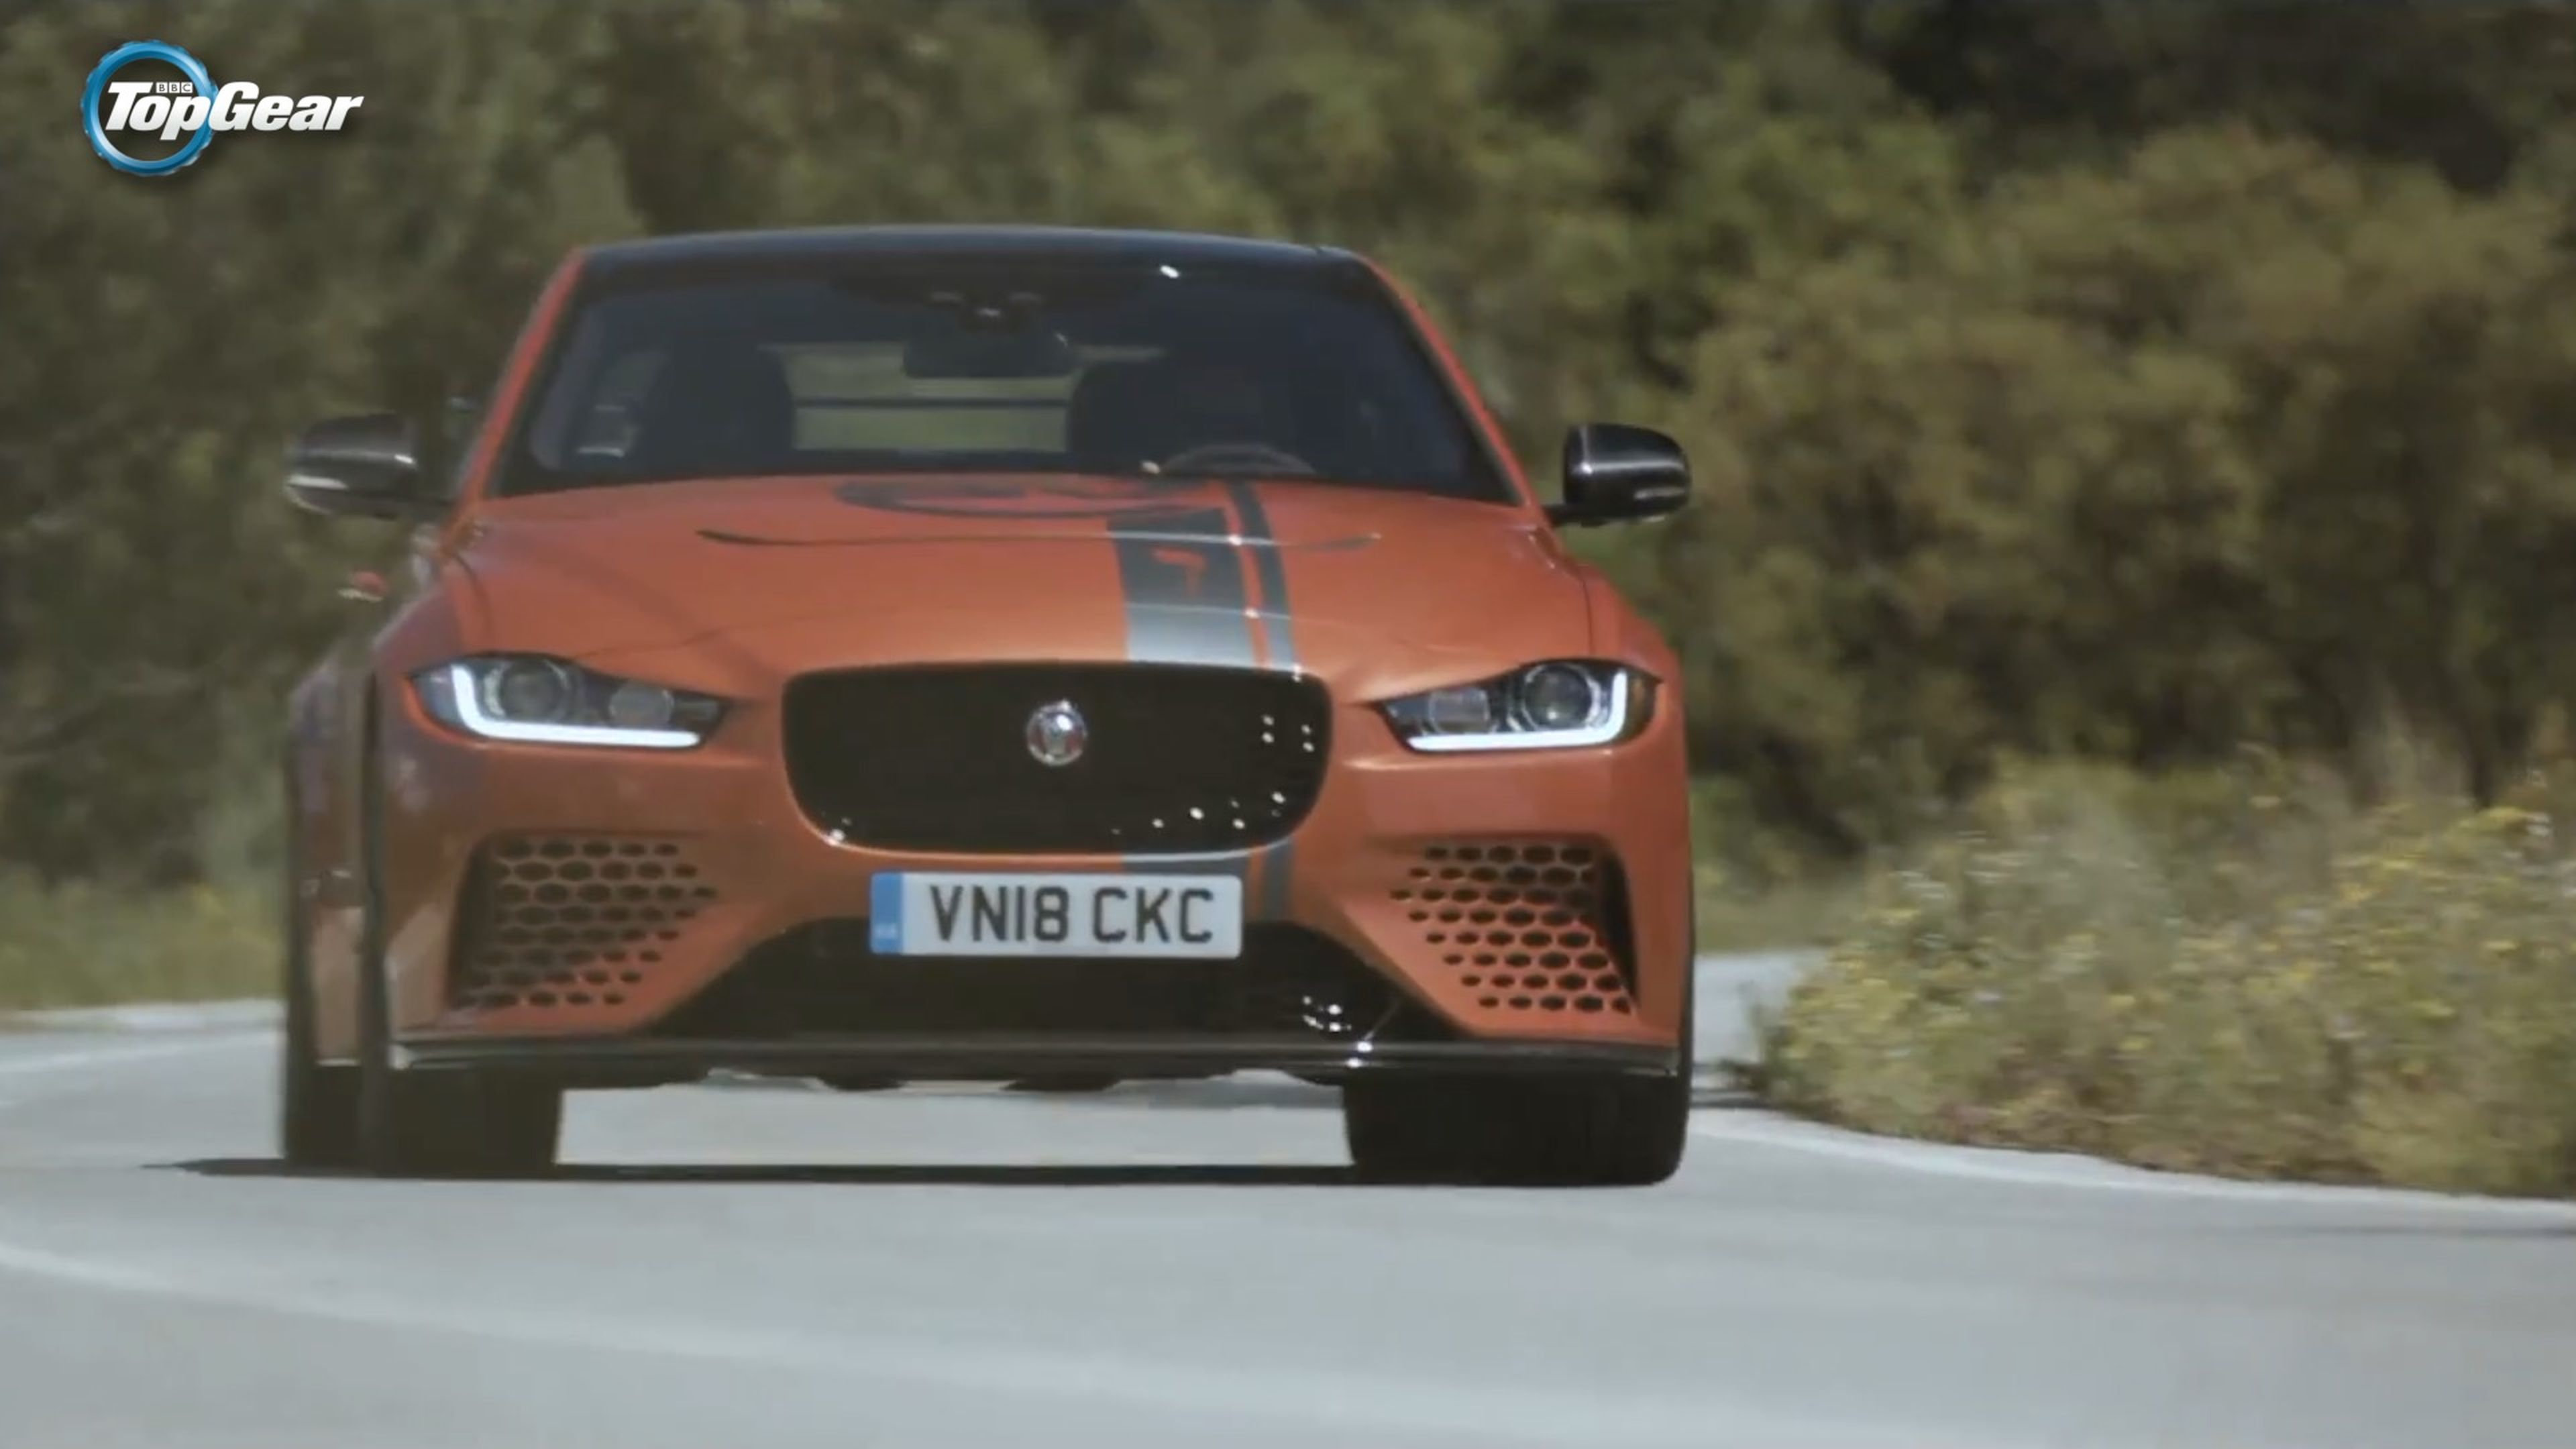 VÍDEO: Jaguar XE SV Project 8, lo más loco que han hecho [TG]